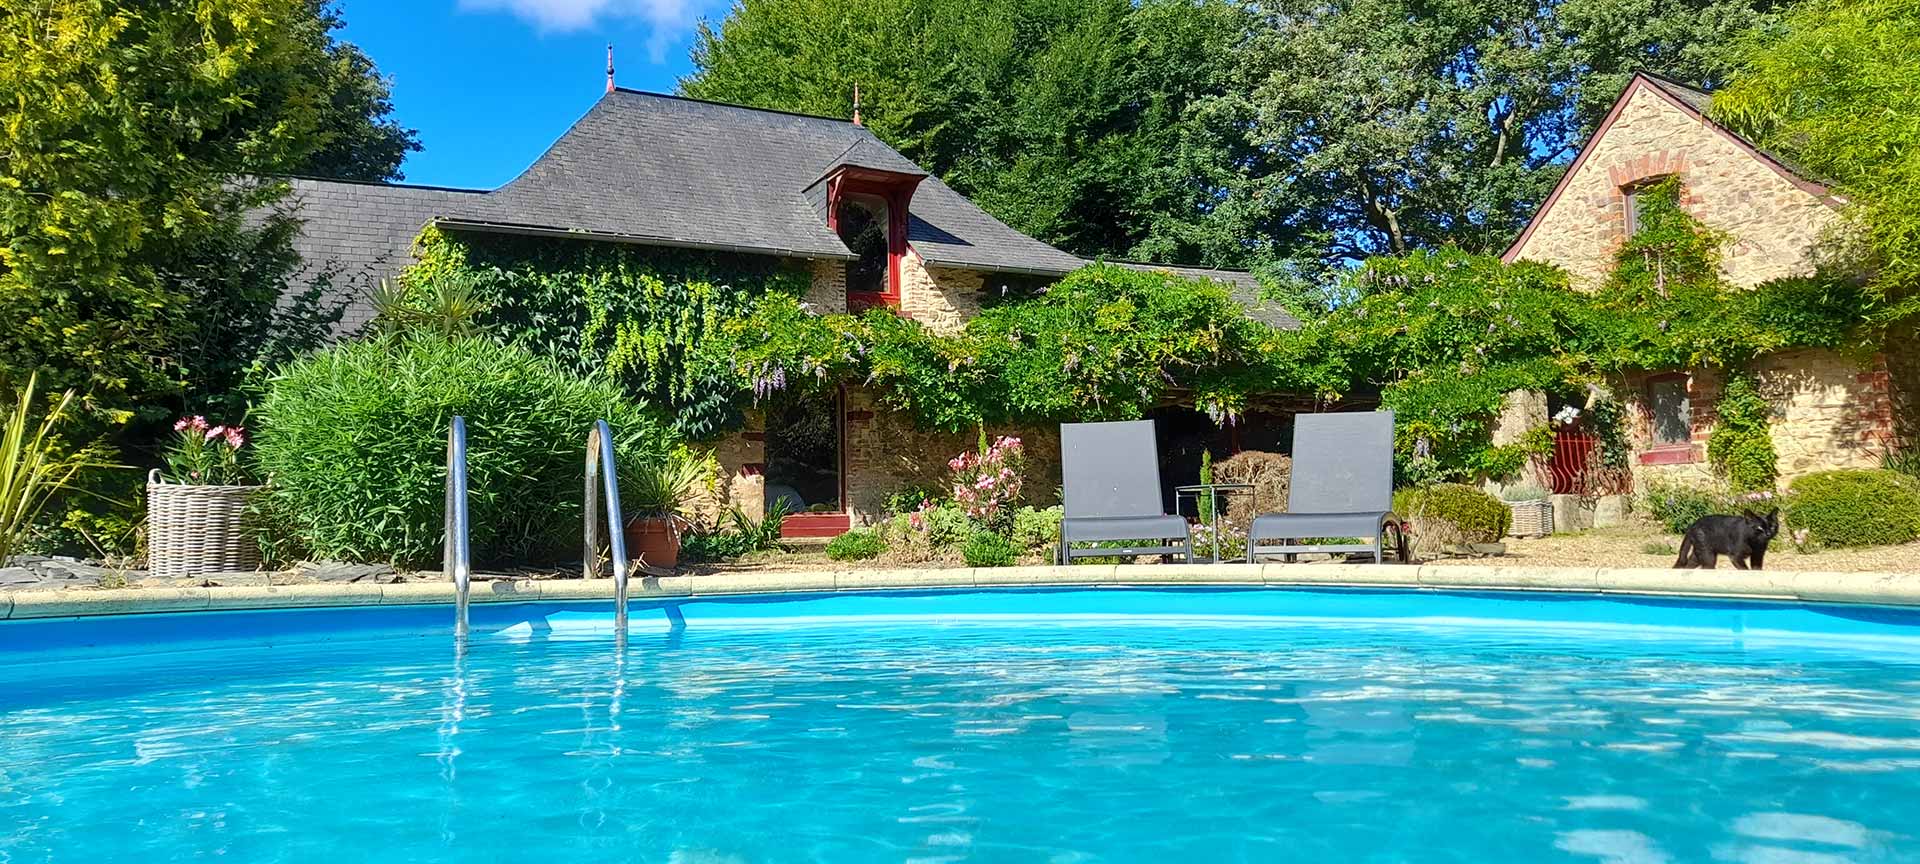 Le domaine de Vaufleury propose ses 3 maisons d'hôtes de luxe avec piscine, jacuzzi, sauna dans un grand parc de 3 hectares en Anjou Bleu au nord de Segré